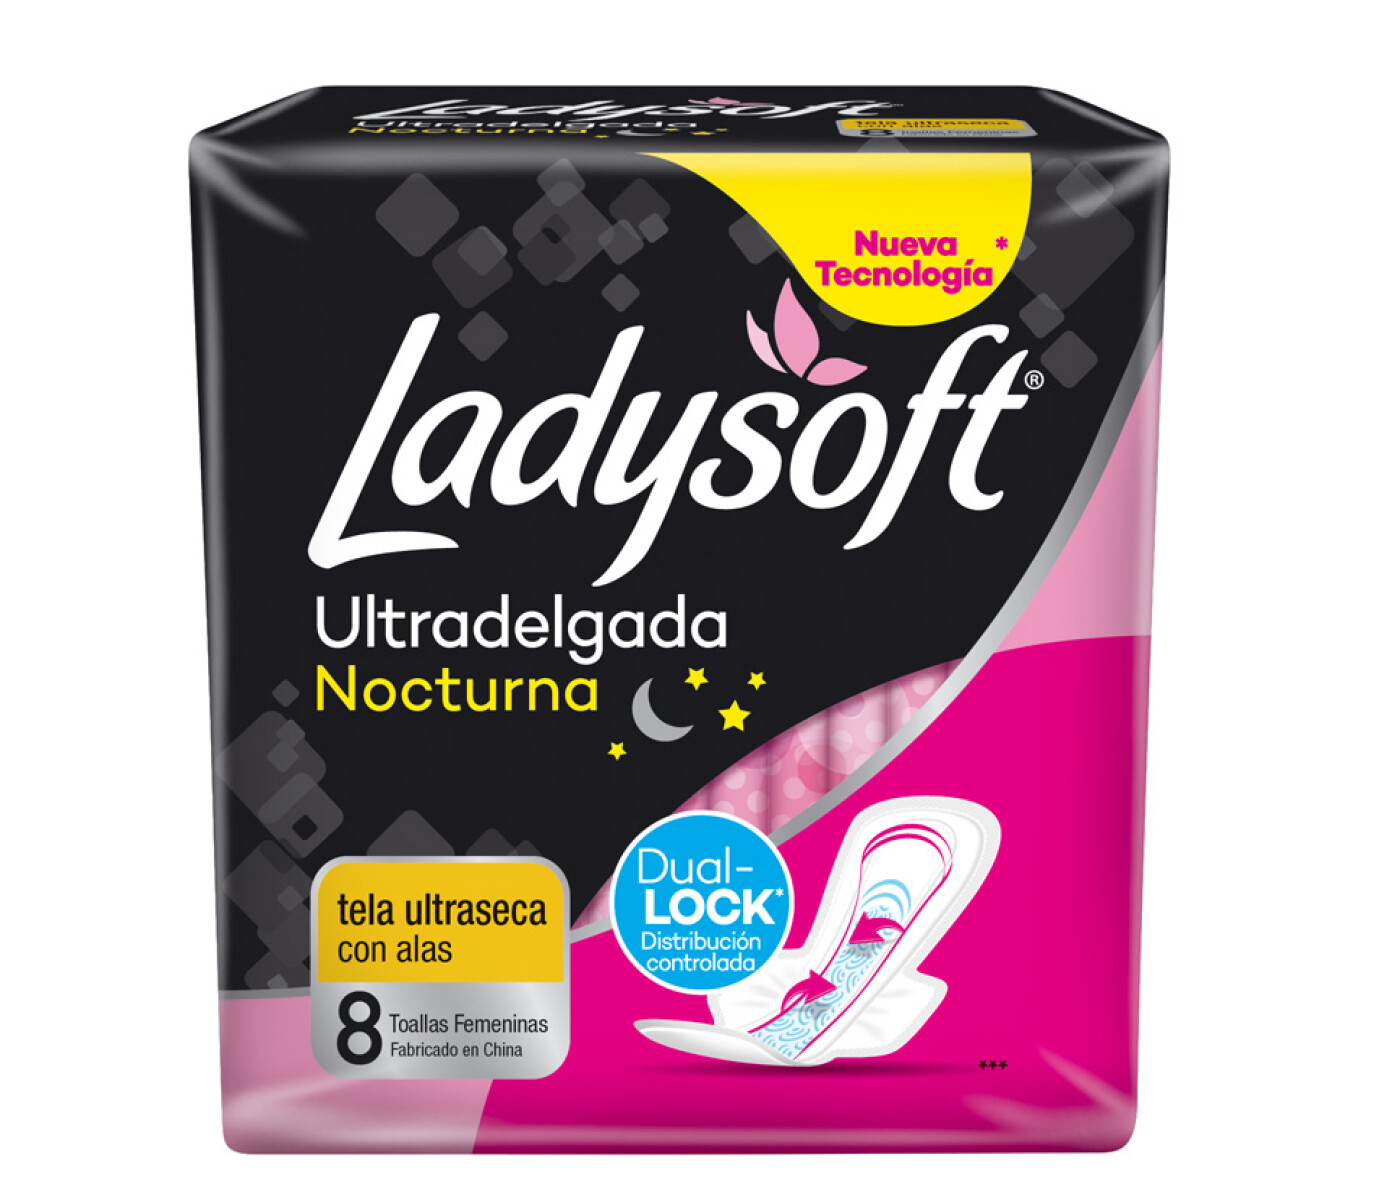 Toallas Femeninas Ladysoft Ultra Delgadas Nocturnas 8 Uds. 